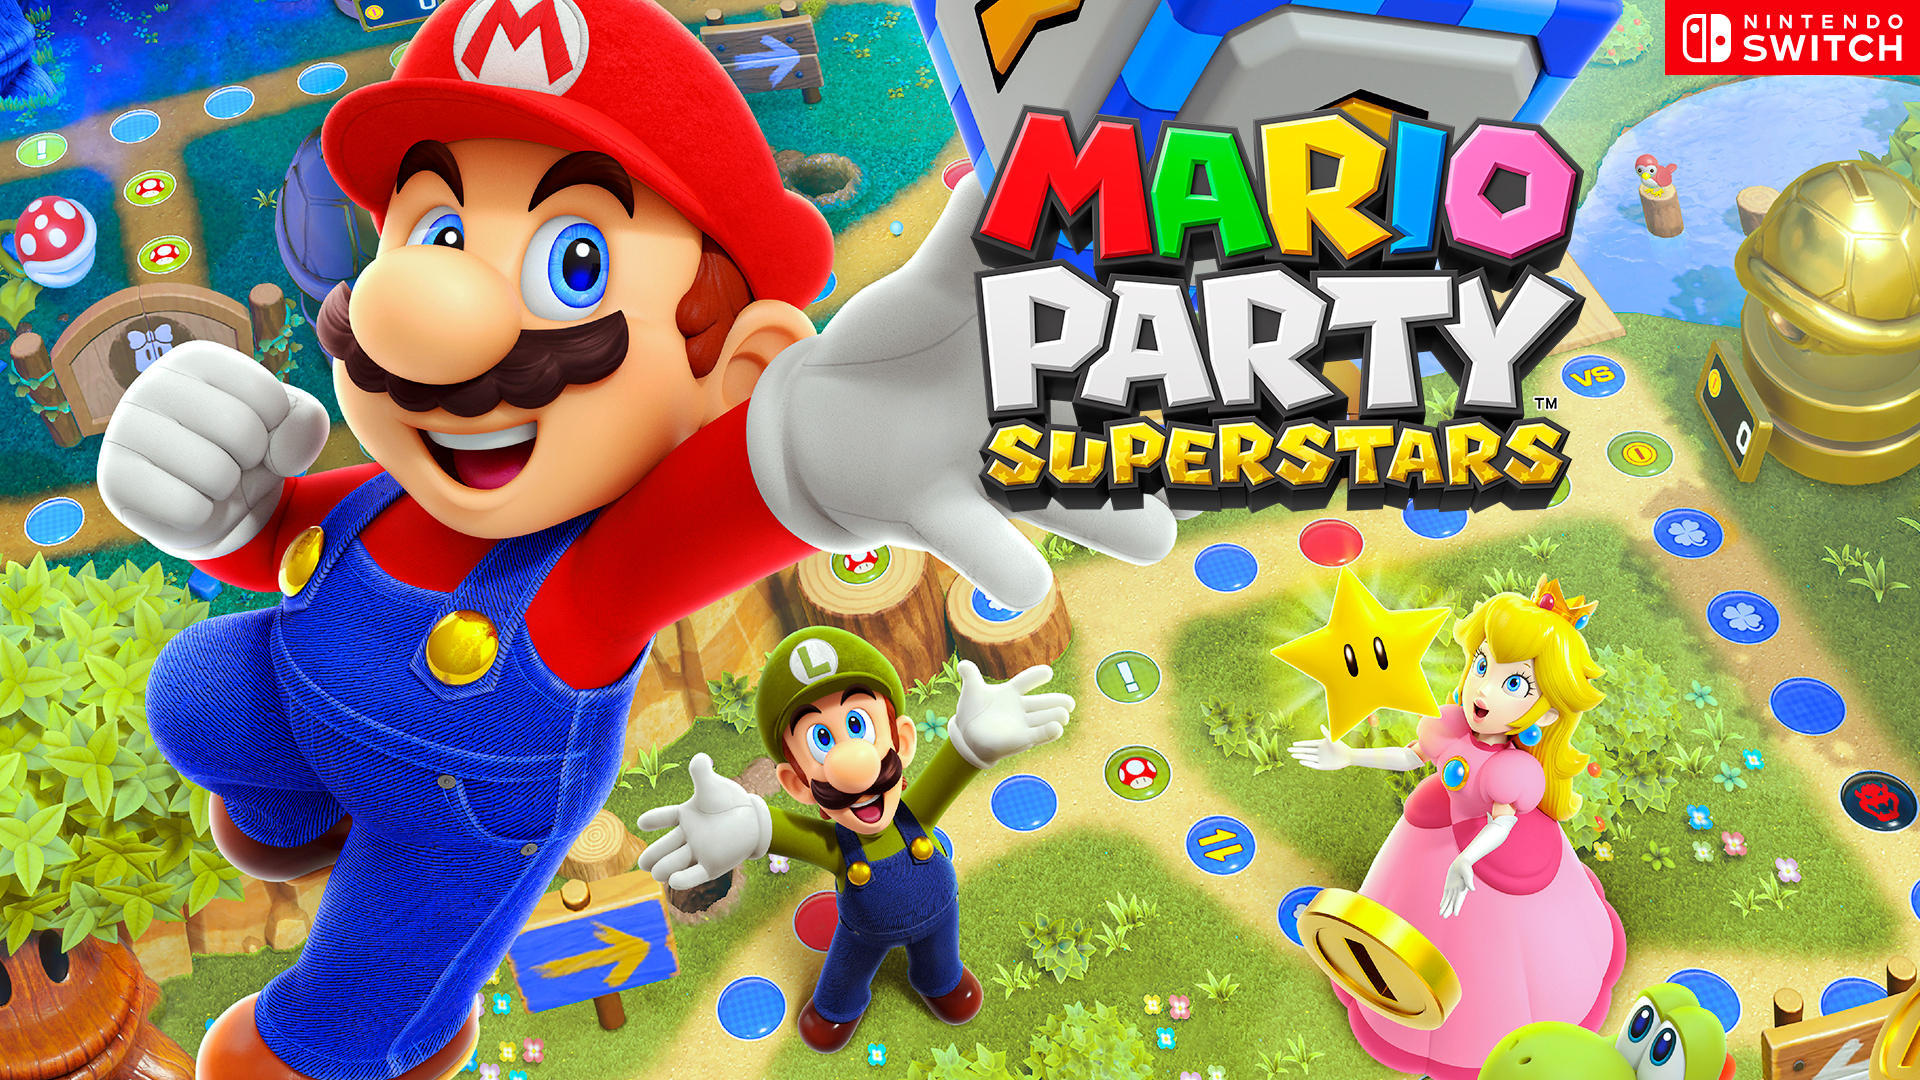 Caballero amable norte hará Análisis Mario Party Superstar, otra divertida fiesta con Mario y sus amigos